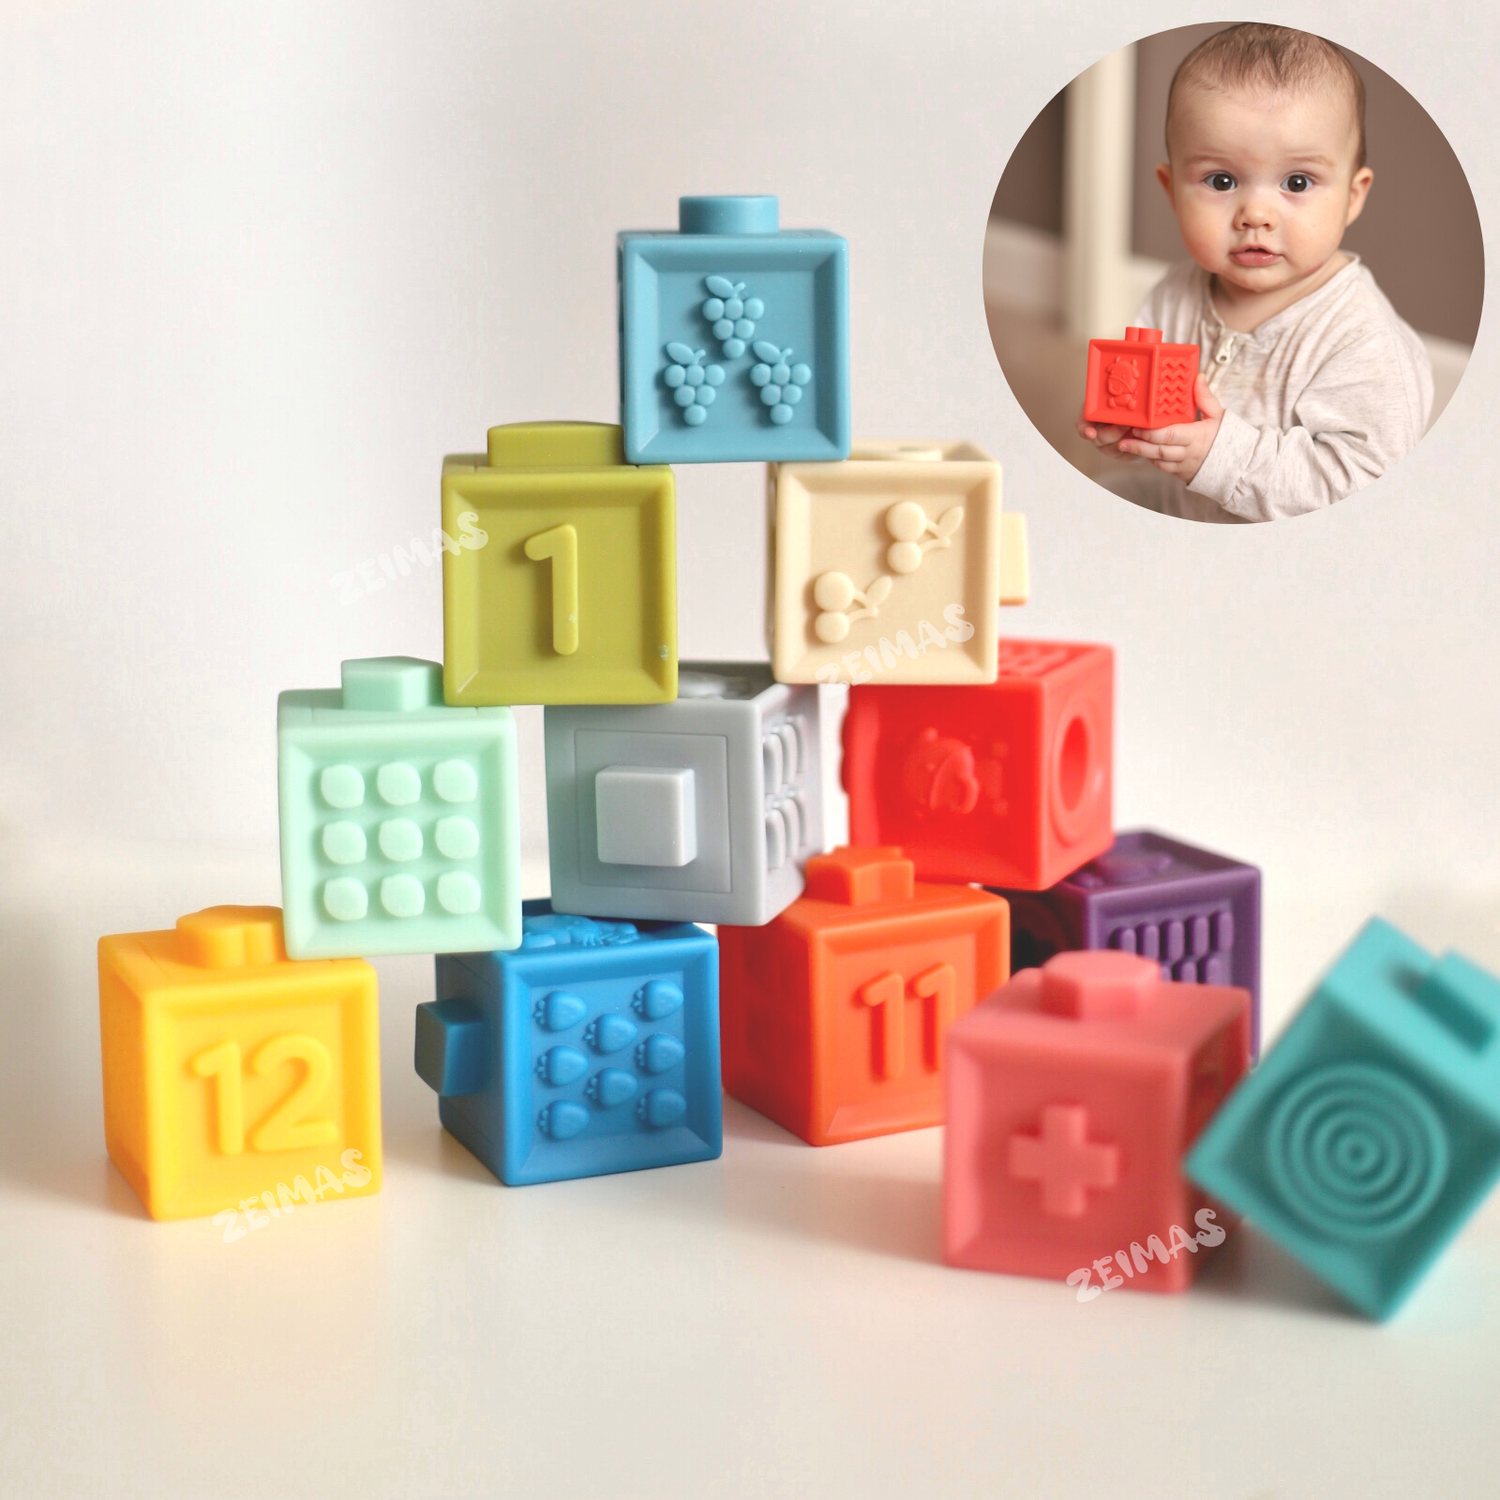 Кубики развивающие с пазами Zeimas Basic набор 12 шт мягкие тактильные игрушки пирамидка детская - фото 13